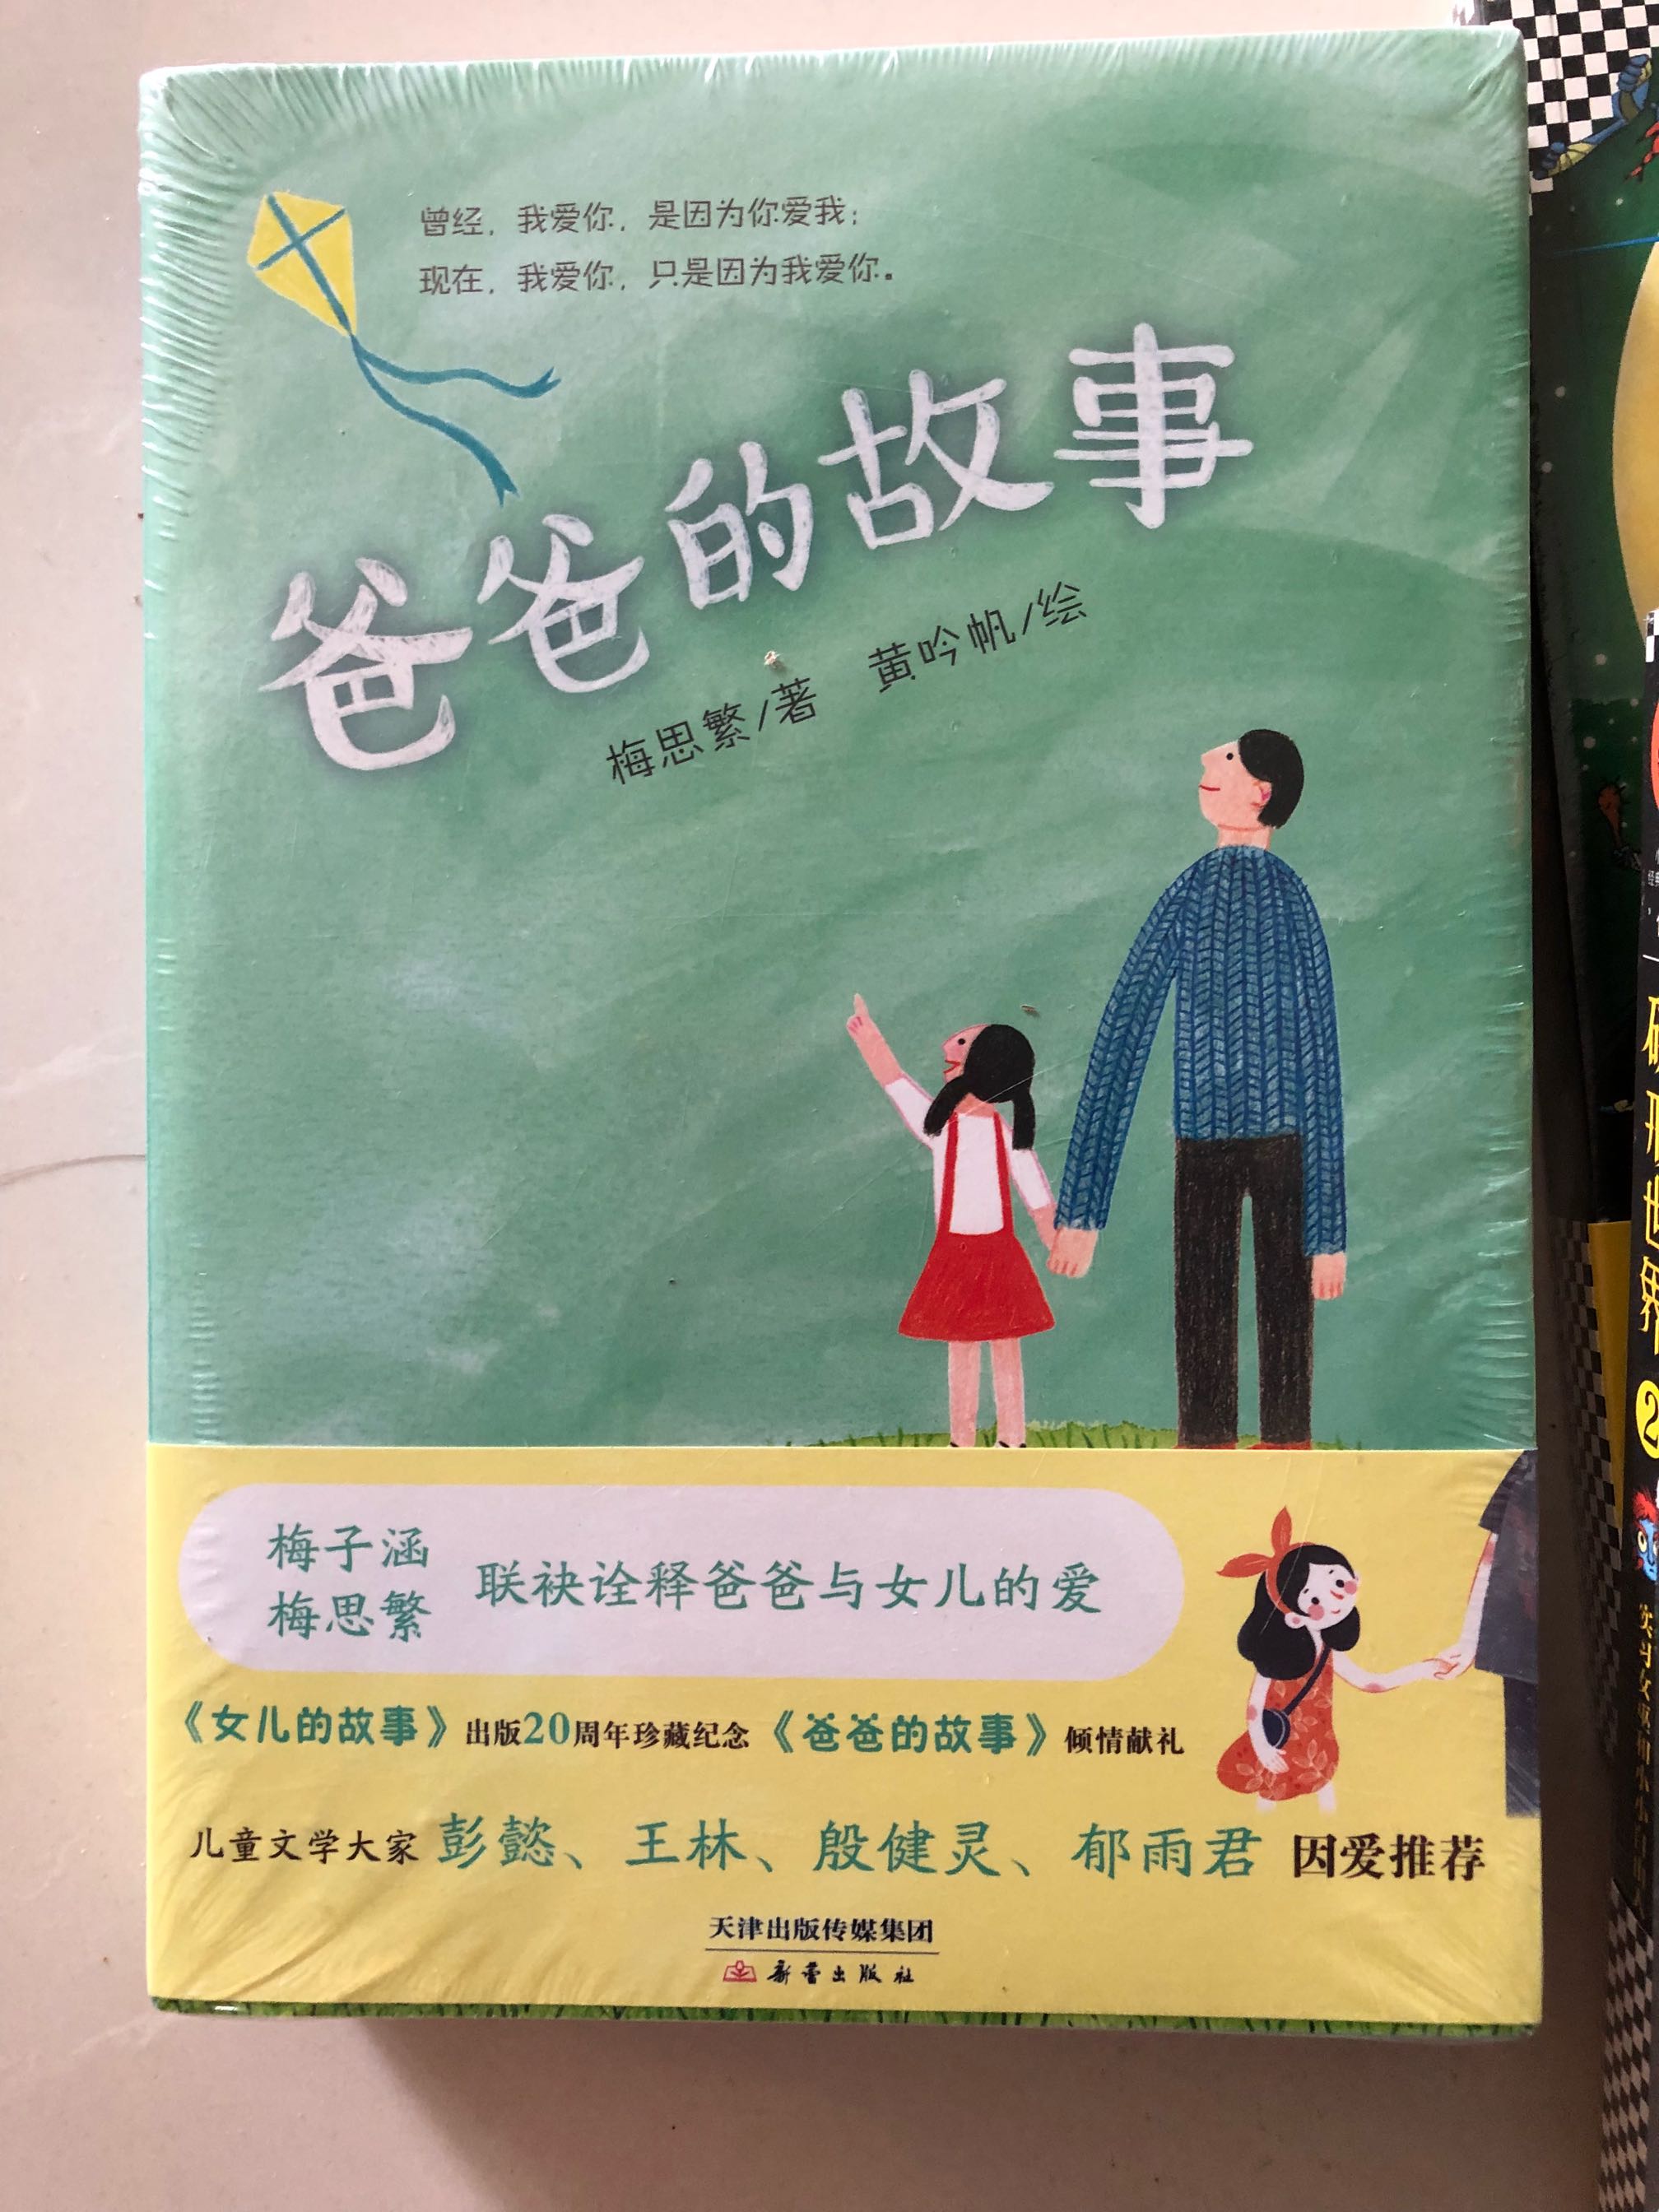 孩子在学校图书馆看到以后点名要的一套书。大头儿子与小头爸爸的作者写的。喜欢。